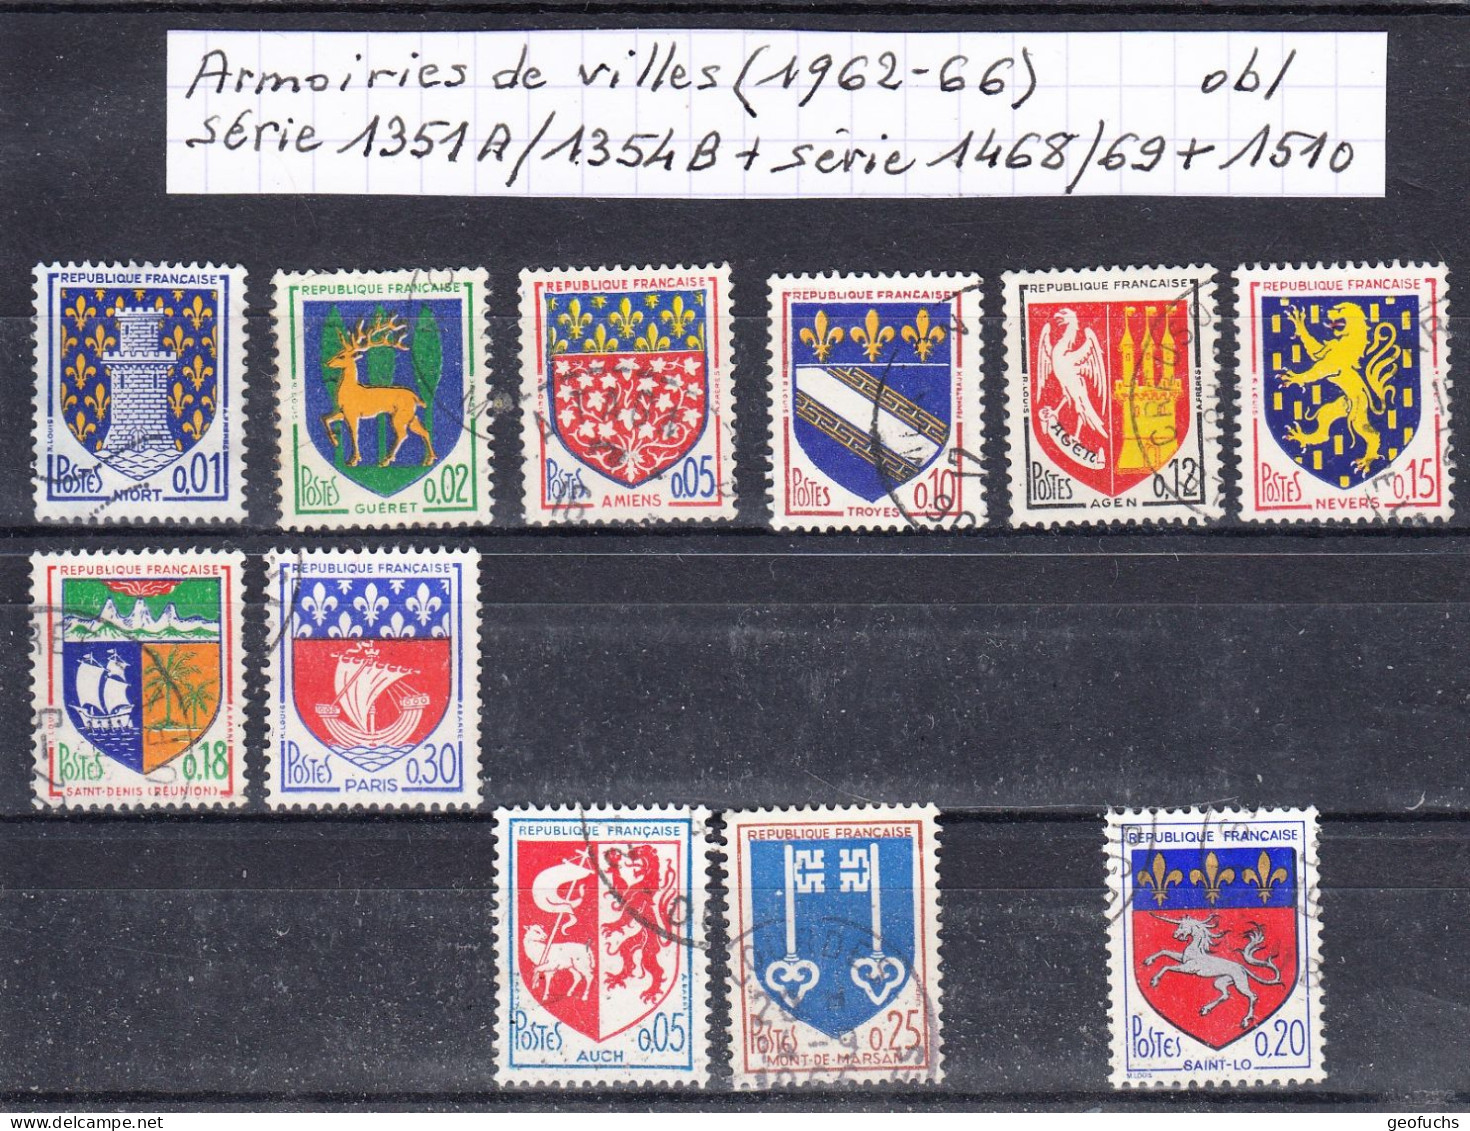 France Armoiries De Villes (1962-66) Y/T Série 1351A/54B + Série 1468/69 + 1510 Oblitérés - 1941-66 Coat Of Arms And Heraldry